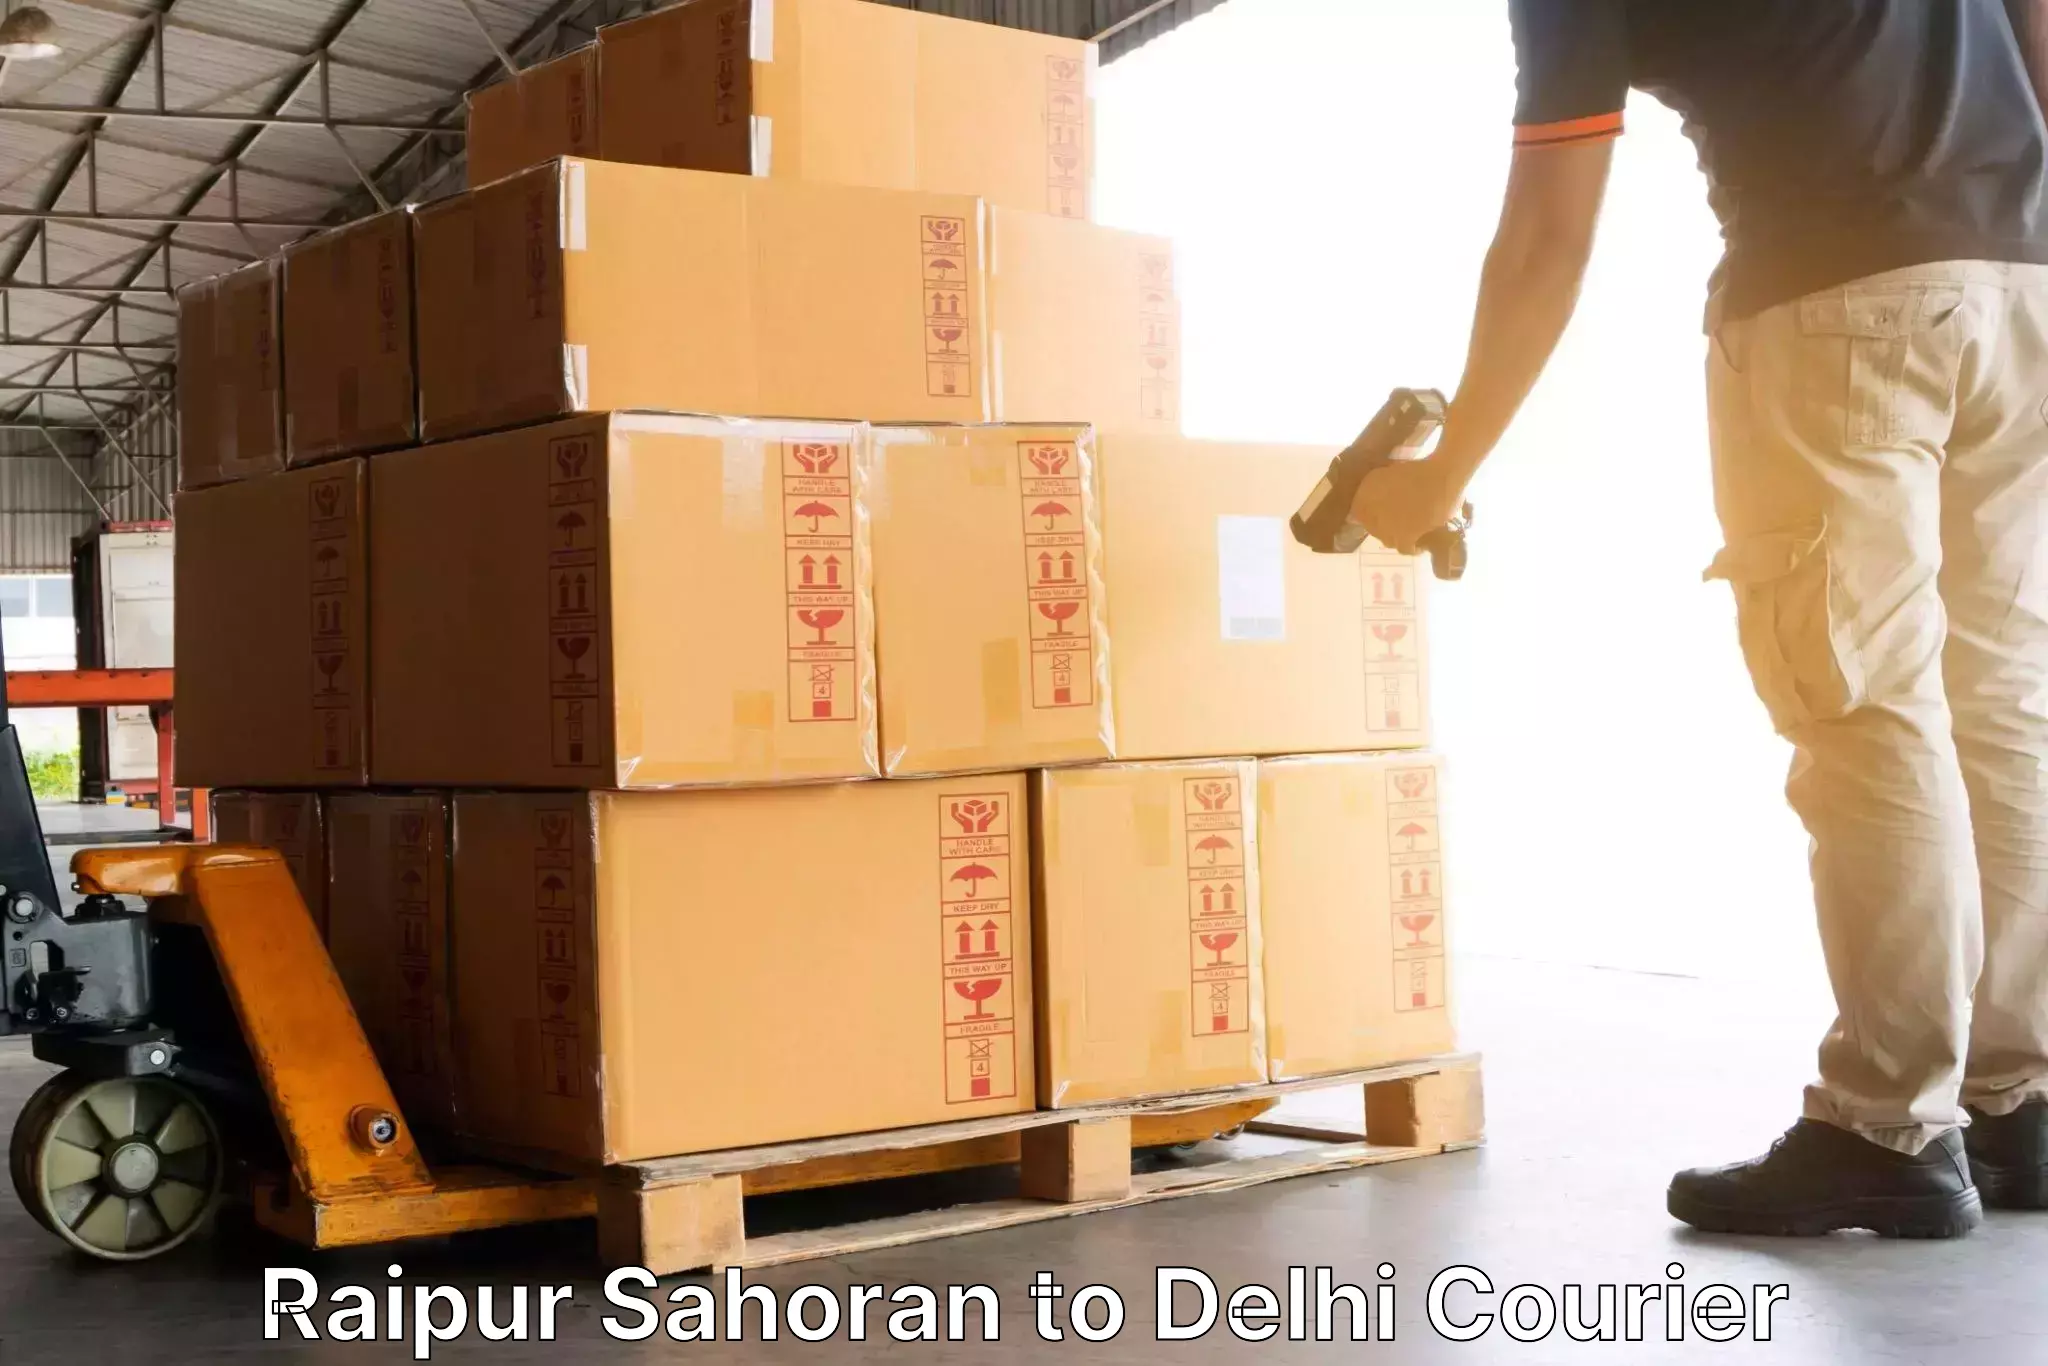 Personal parcel delivery Raipur Sahoran to Burari